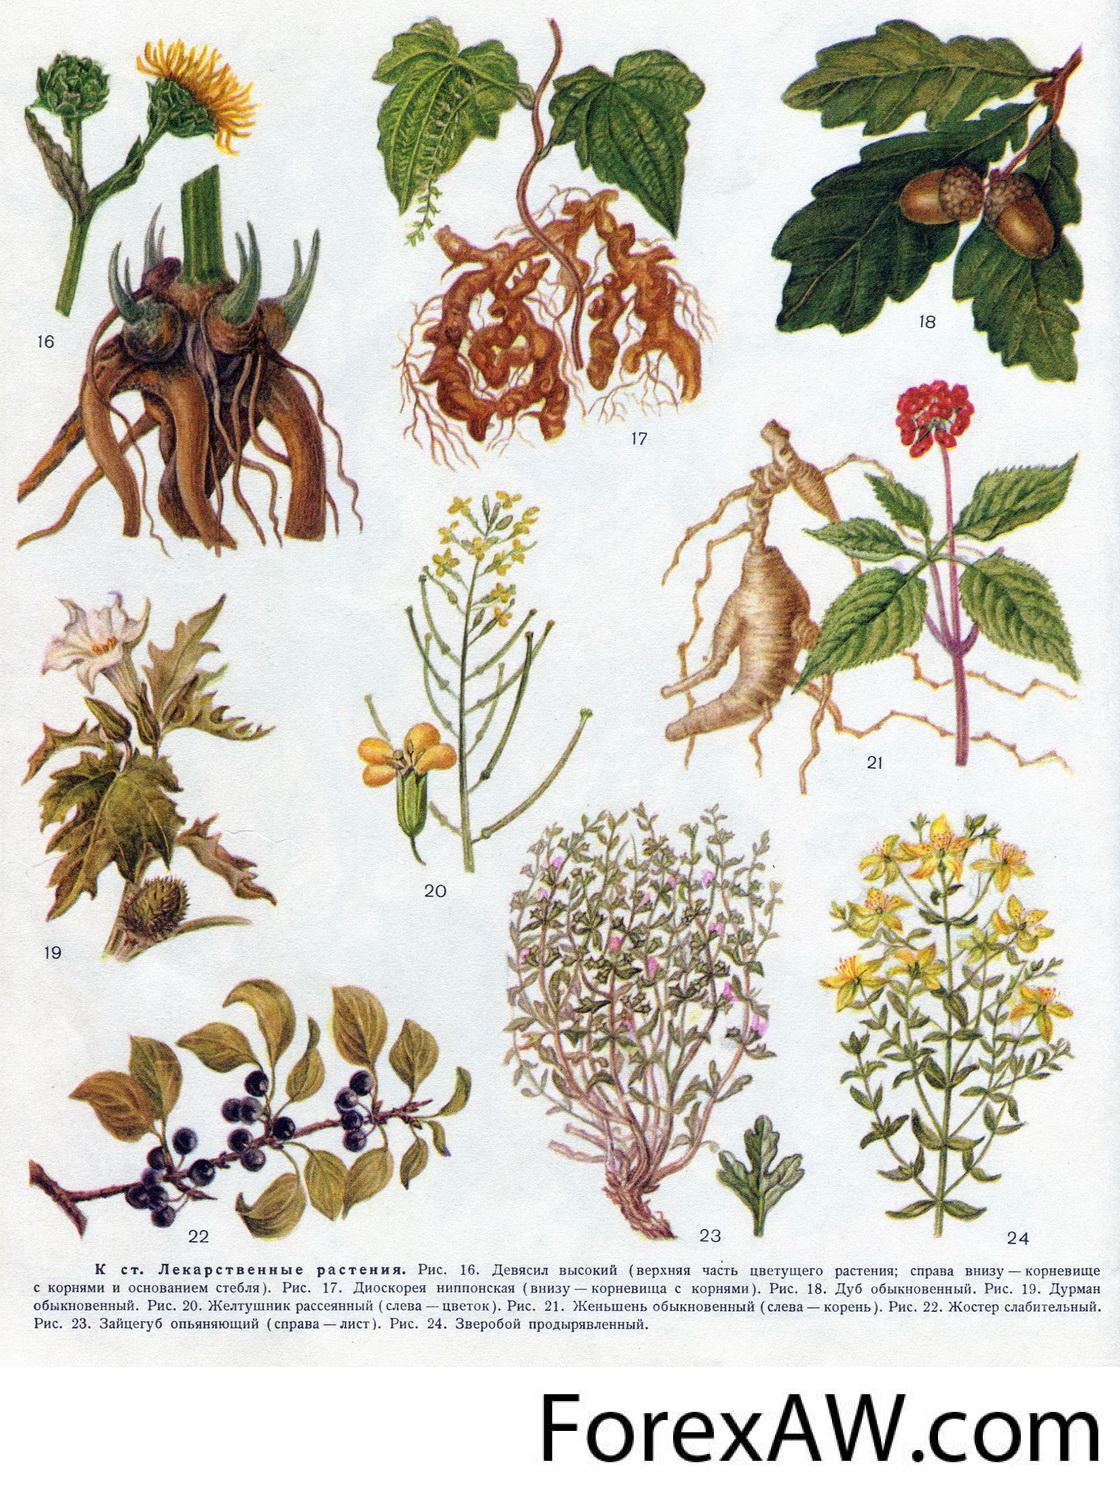 Полные названия растений